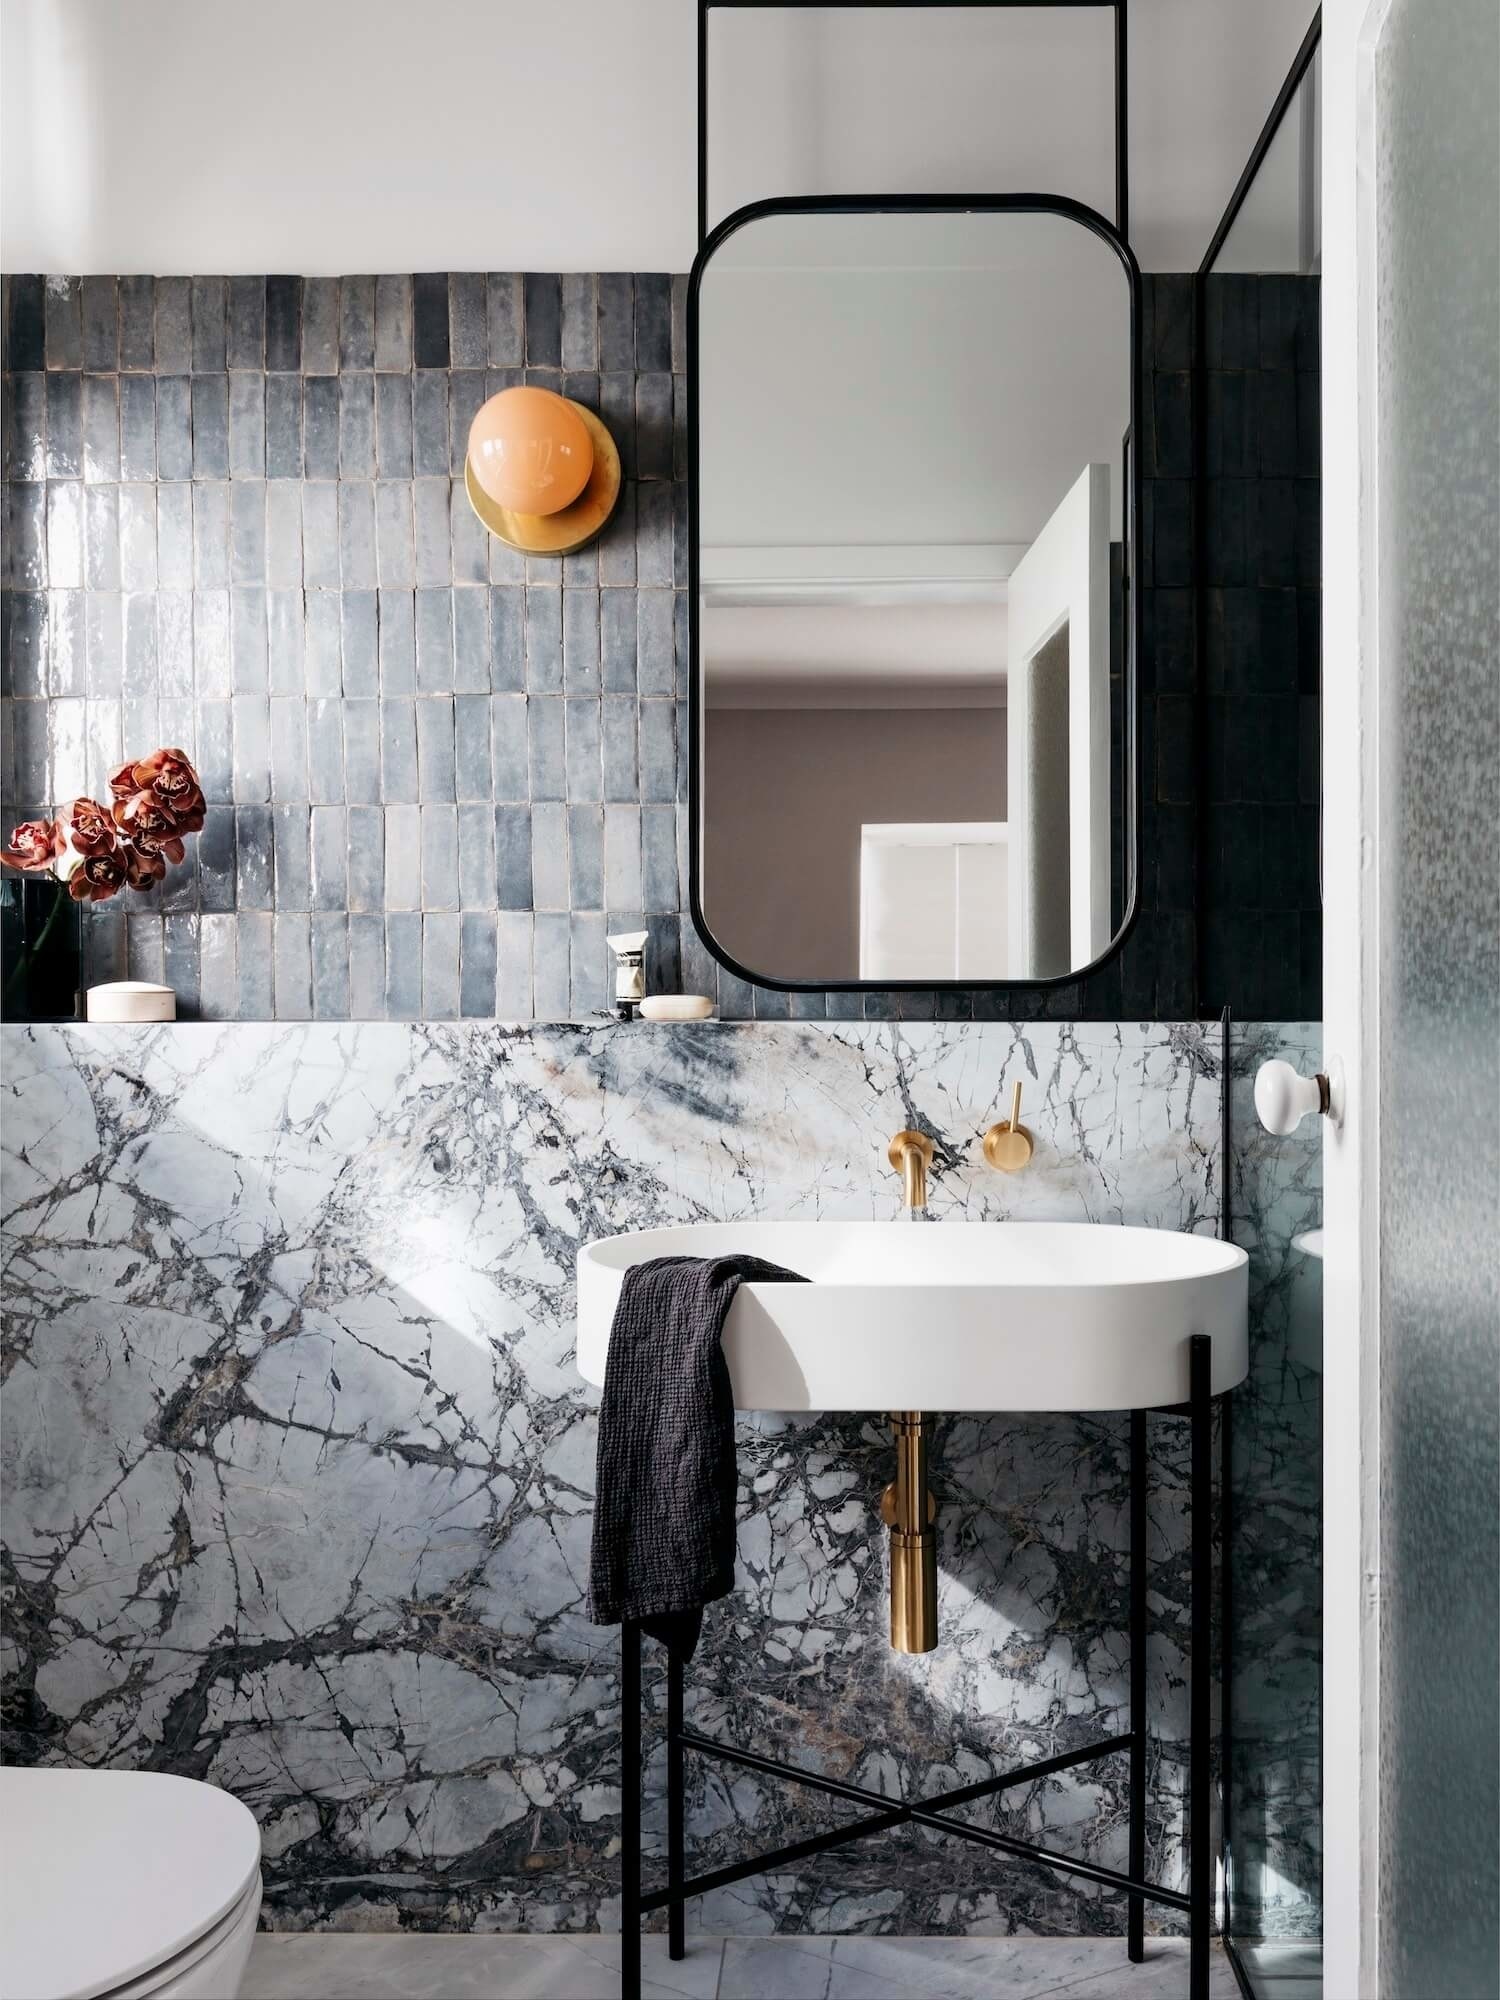 Dự án thiết kế nội thất của Decus Interiors, Sydney (Úc) mang lại sự lôi cuốn cho phòng tắm nhỏ nhờ kết hợp những viên gạch xám ốp dọc theo bức tường trên bồn rửa, phần tường bên dưới sử dụng đá cẩm thạch mang lại vẻ đẹp đa dạng, sắc sảo.